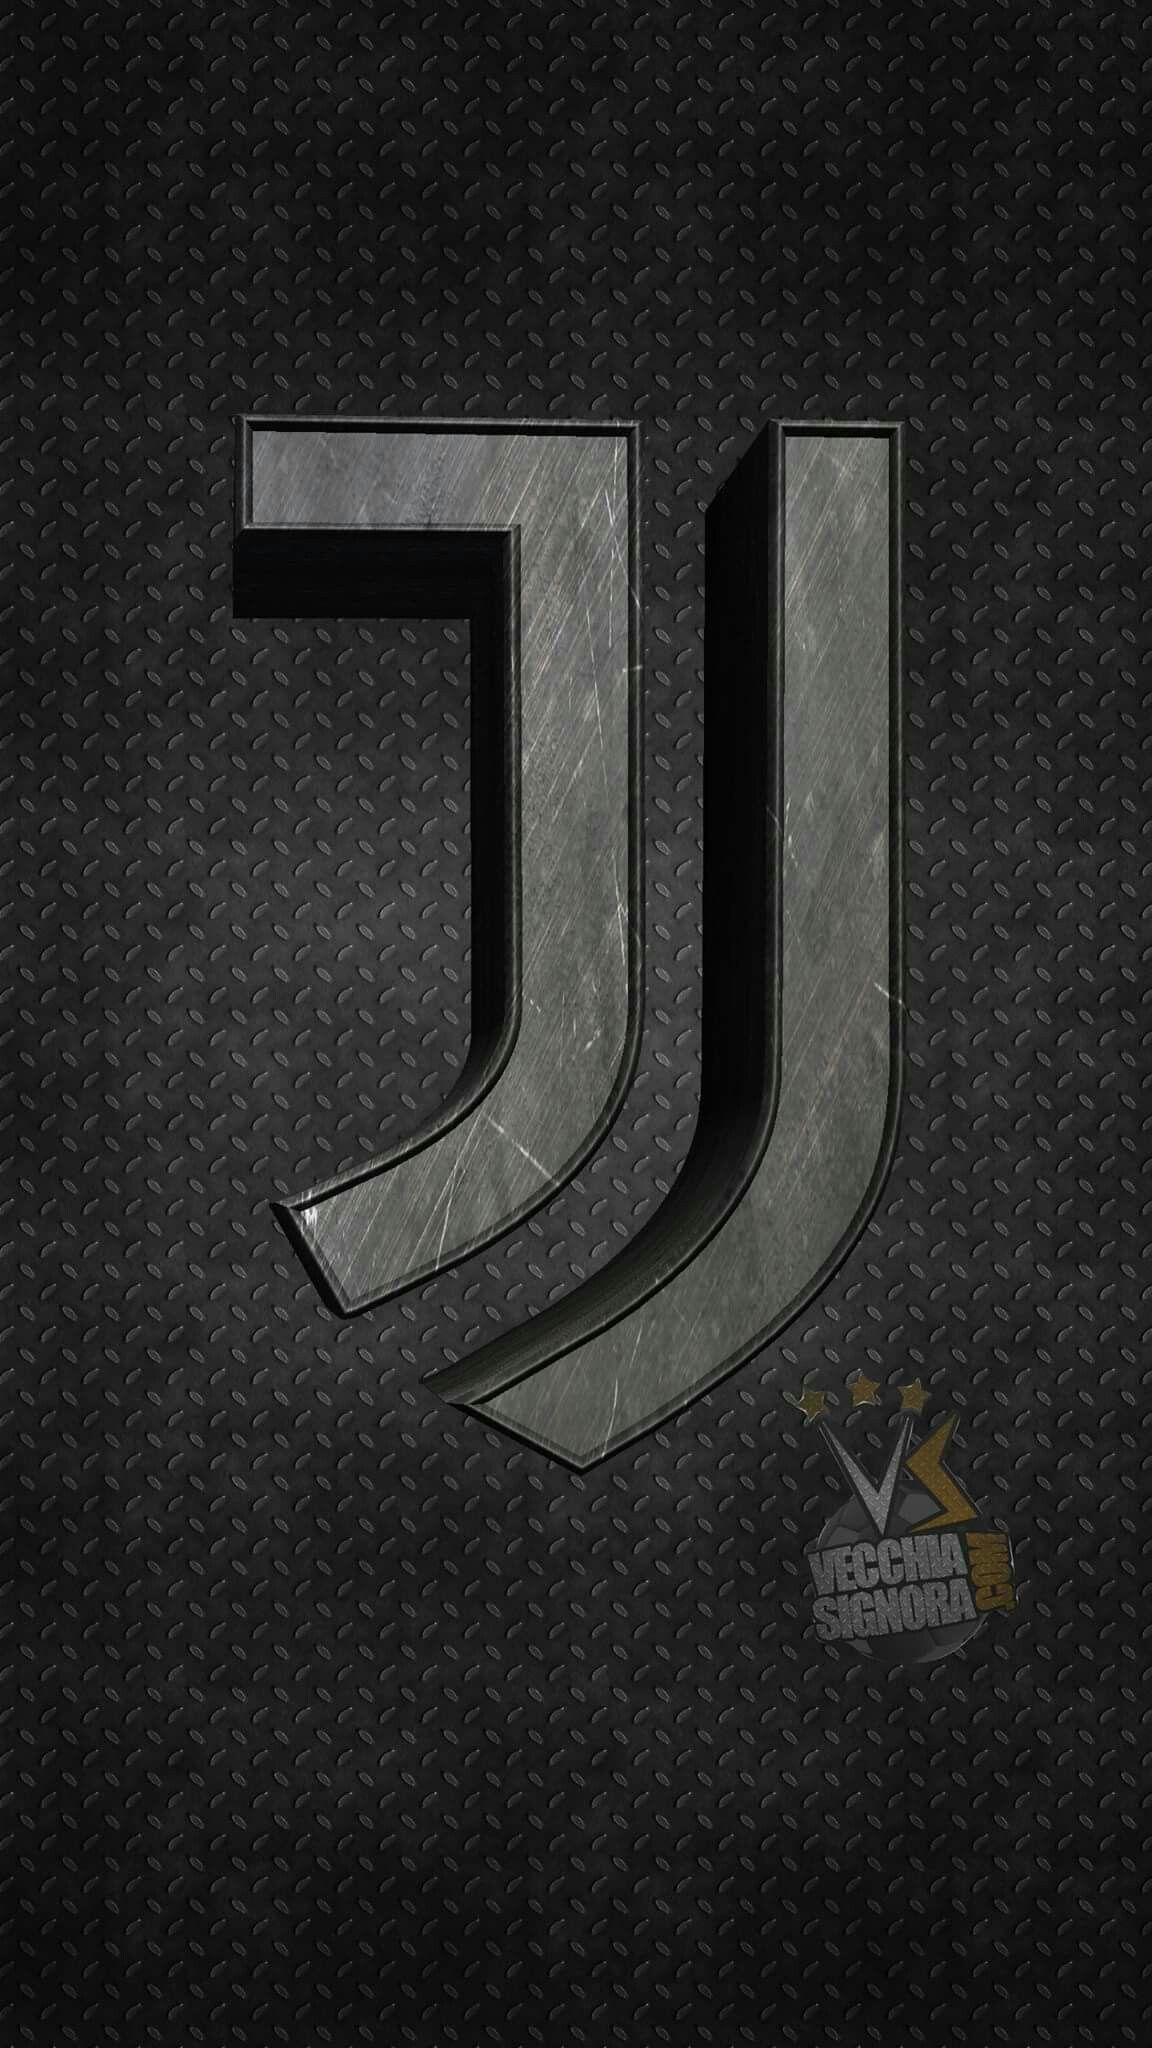 Juventus. Juventus fc